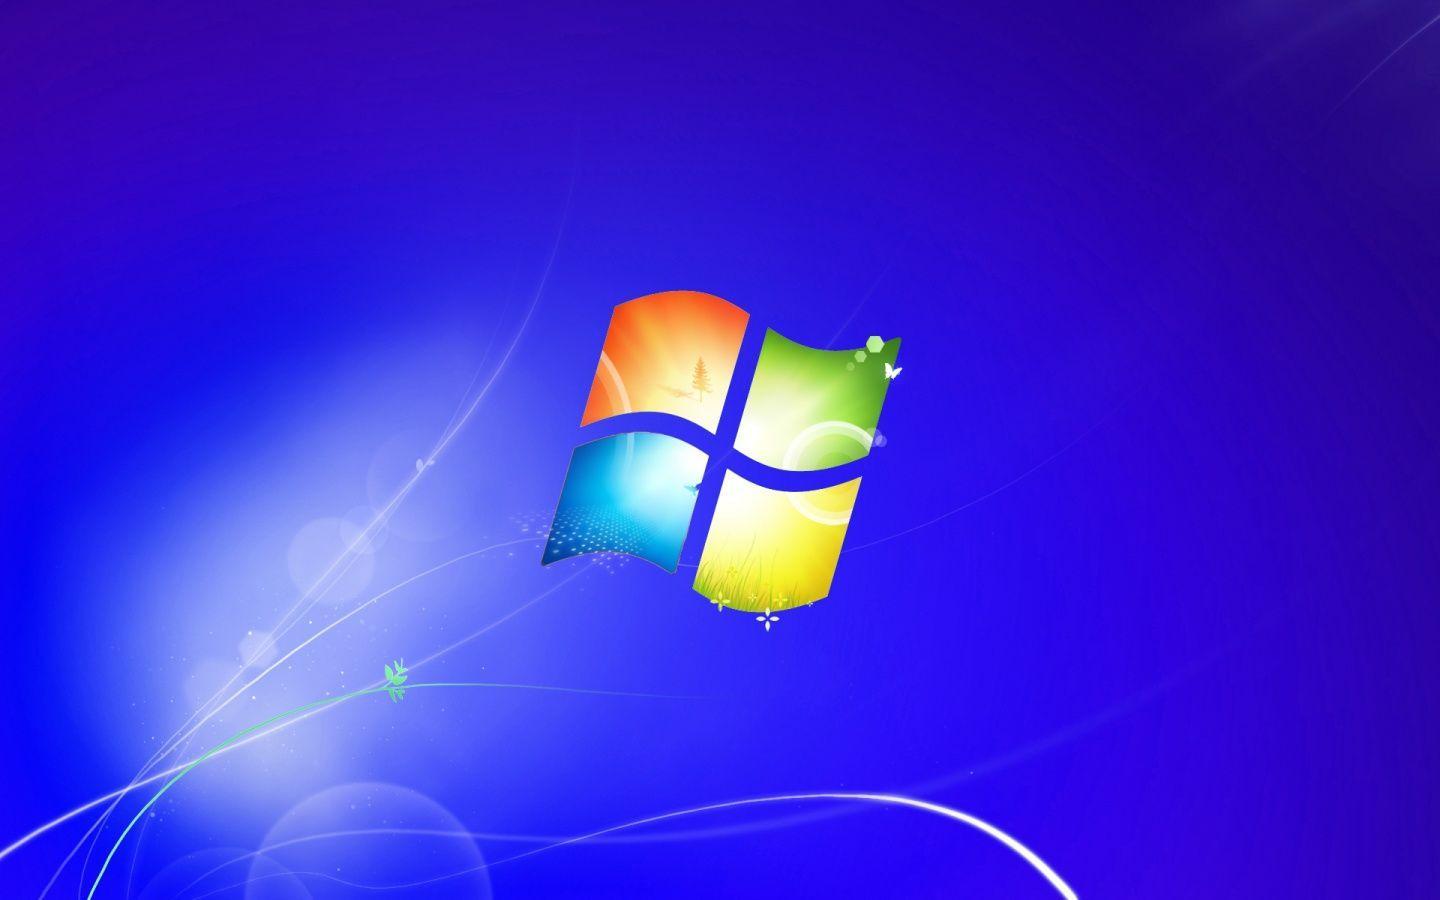 Windows 1440x900: Tận hưởng những hình ảnh đẹp tuyệt vời trên màn hình vi tính của bạn với độ phân giải 1440x